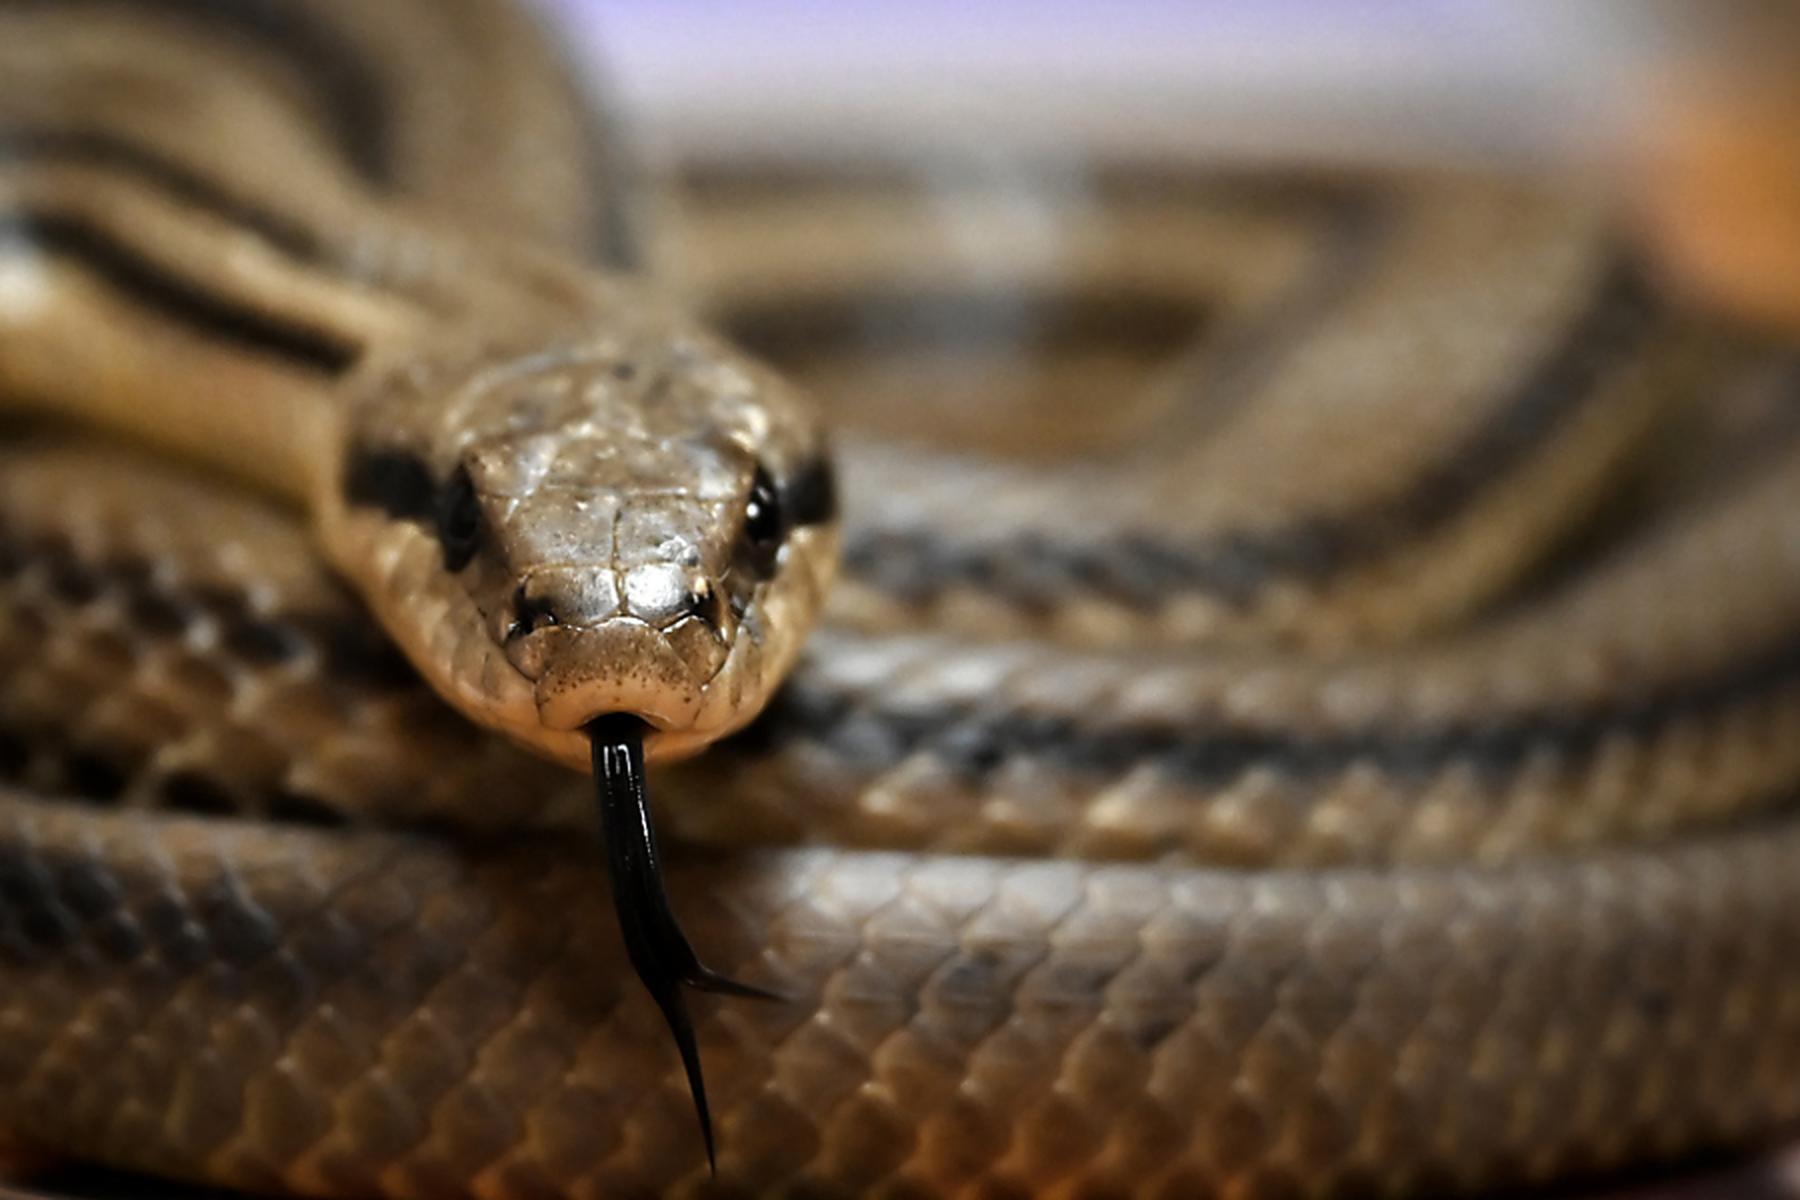 Peking: Mann will hundert Schlangen in Hose nach China schmuggeln